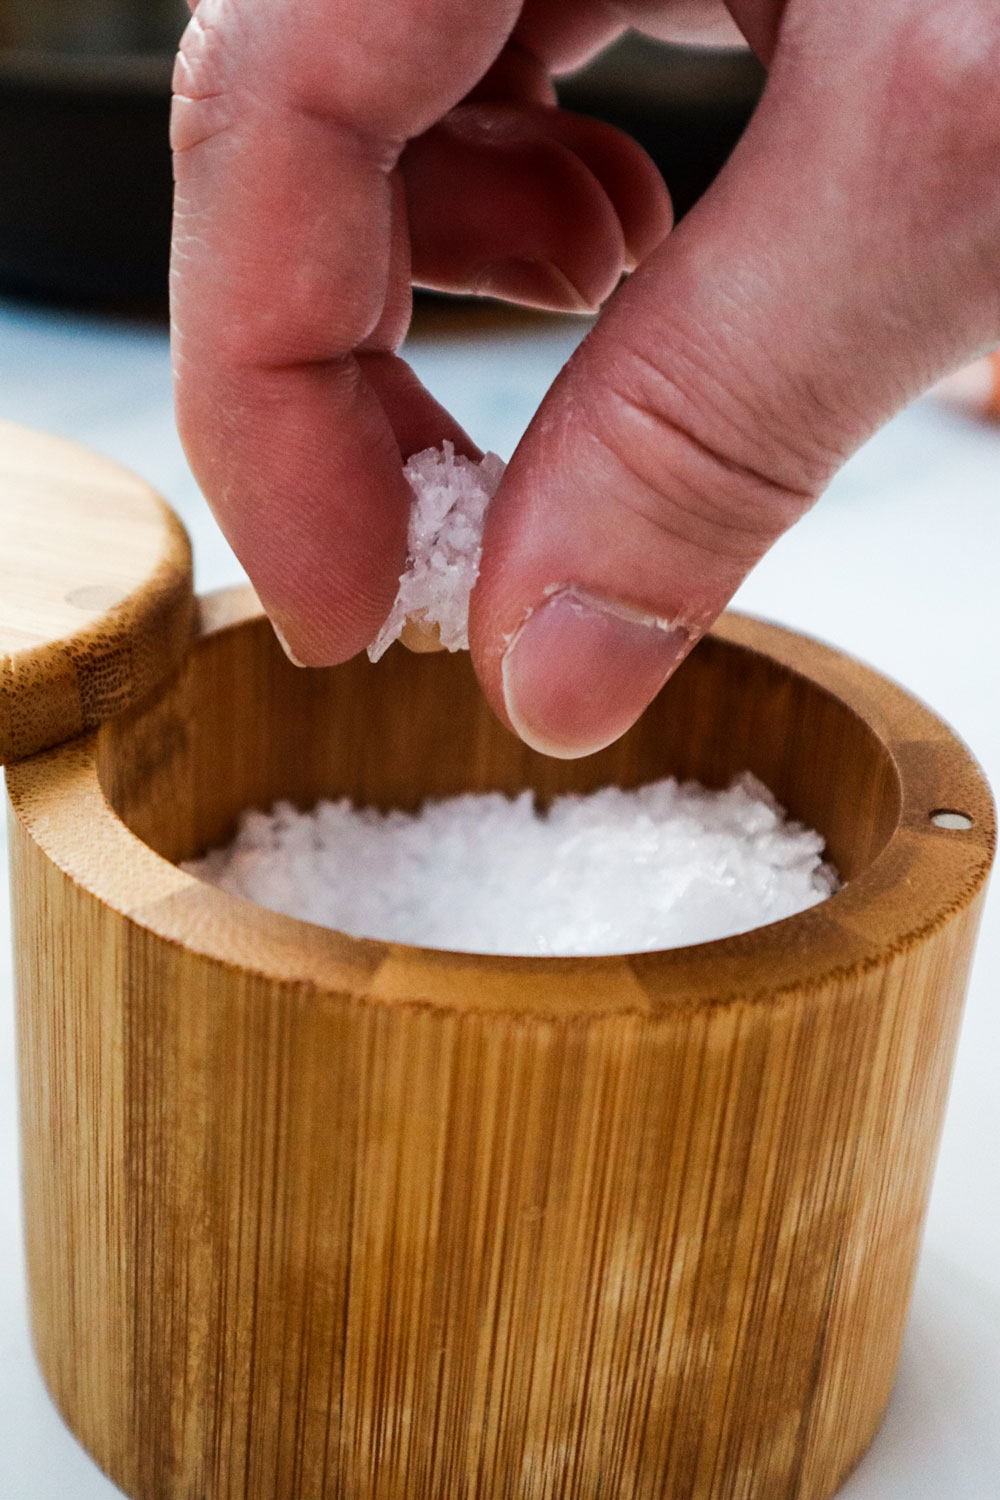 A person holidng a pinch of salt.